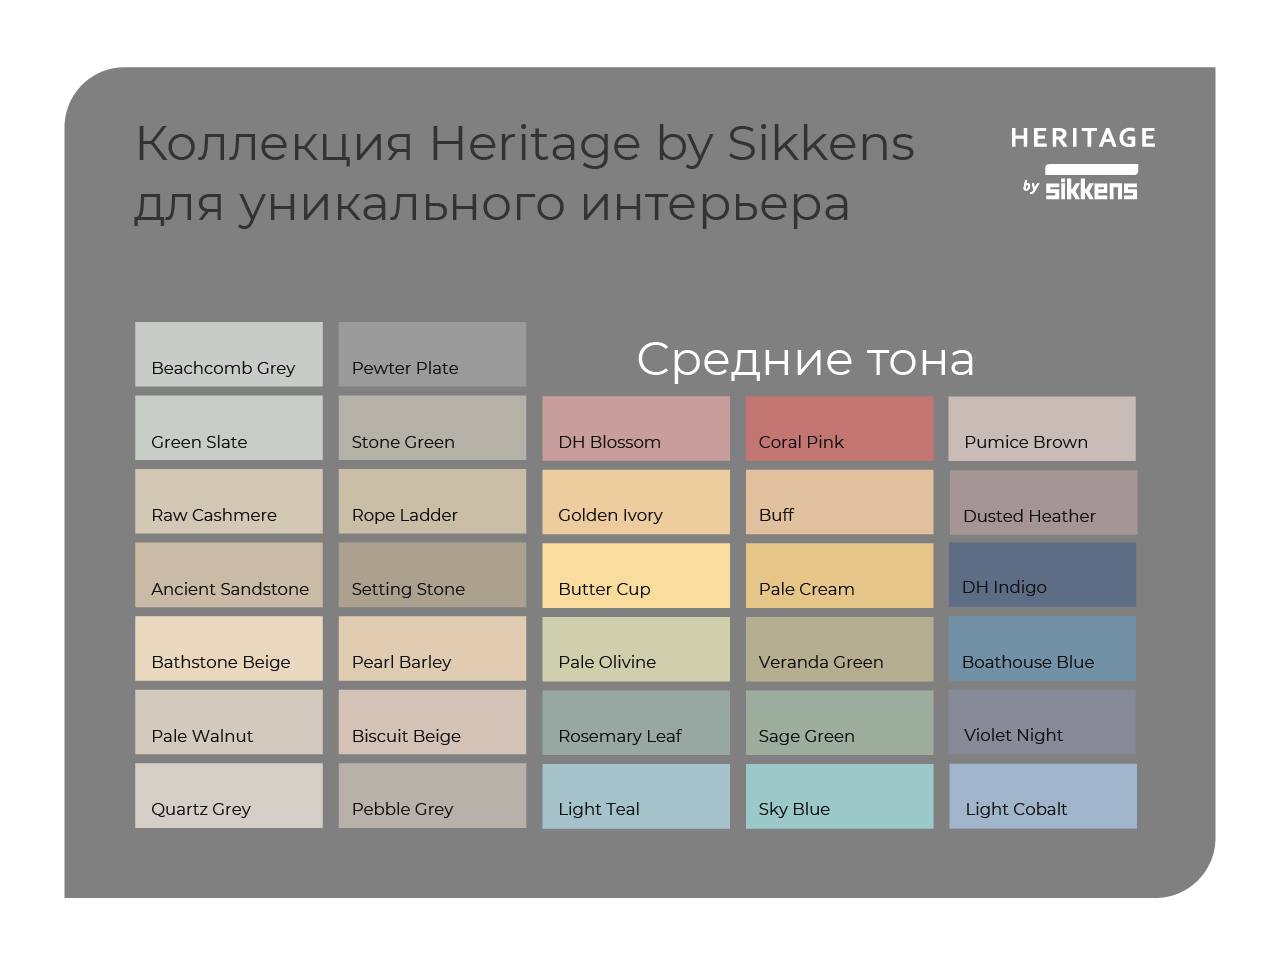 Новинка! Линейка красок премиум-класса, разработанная специально для России: Heritage by Sikkens.